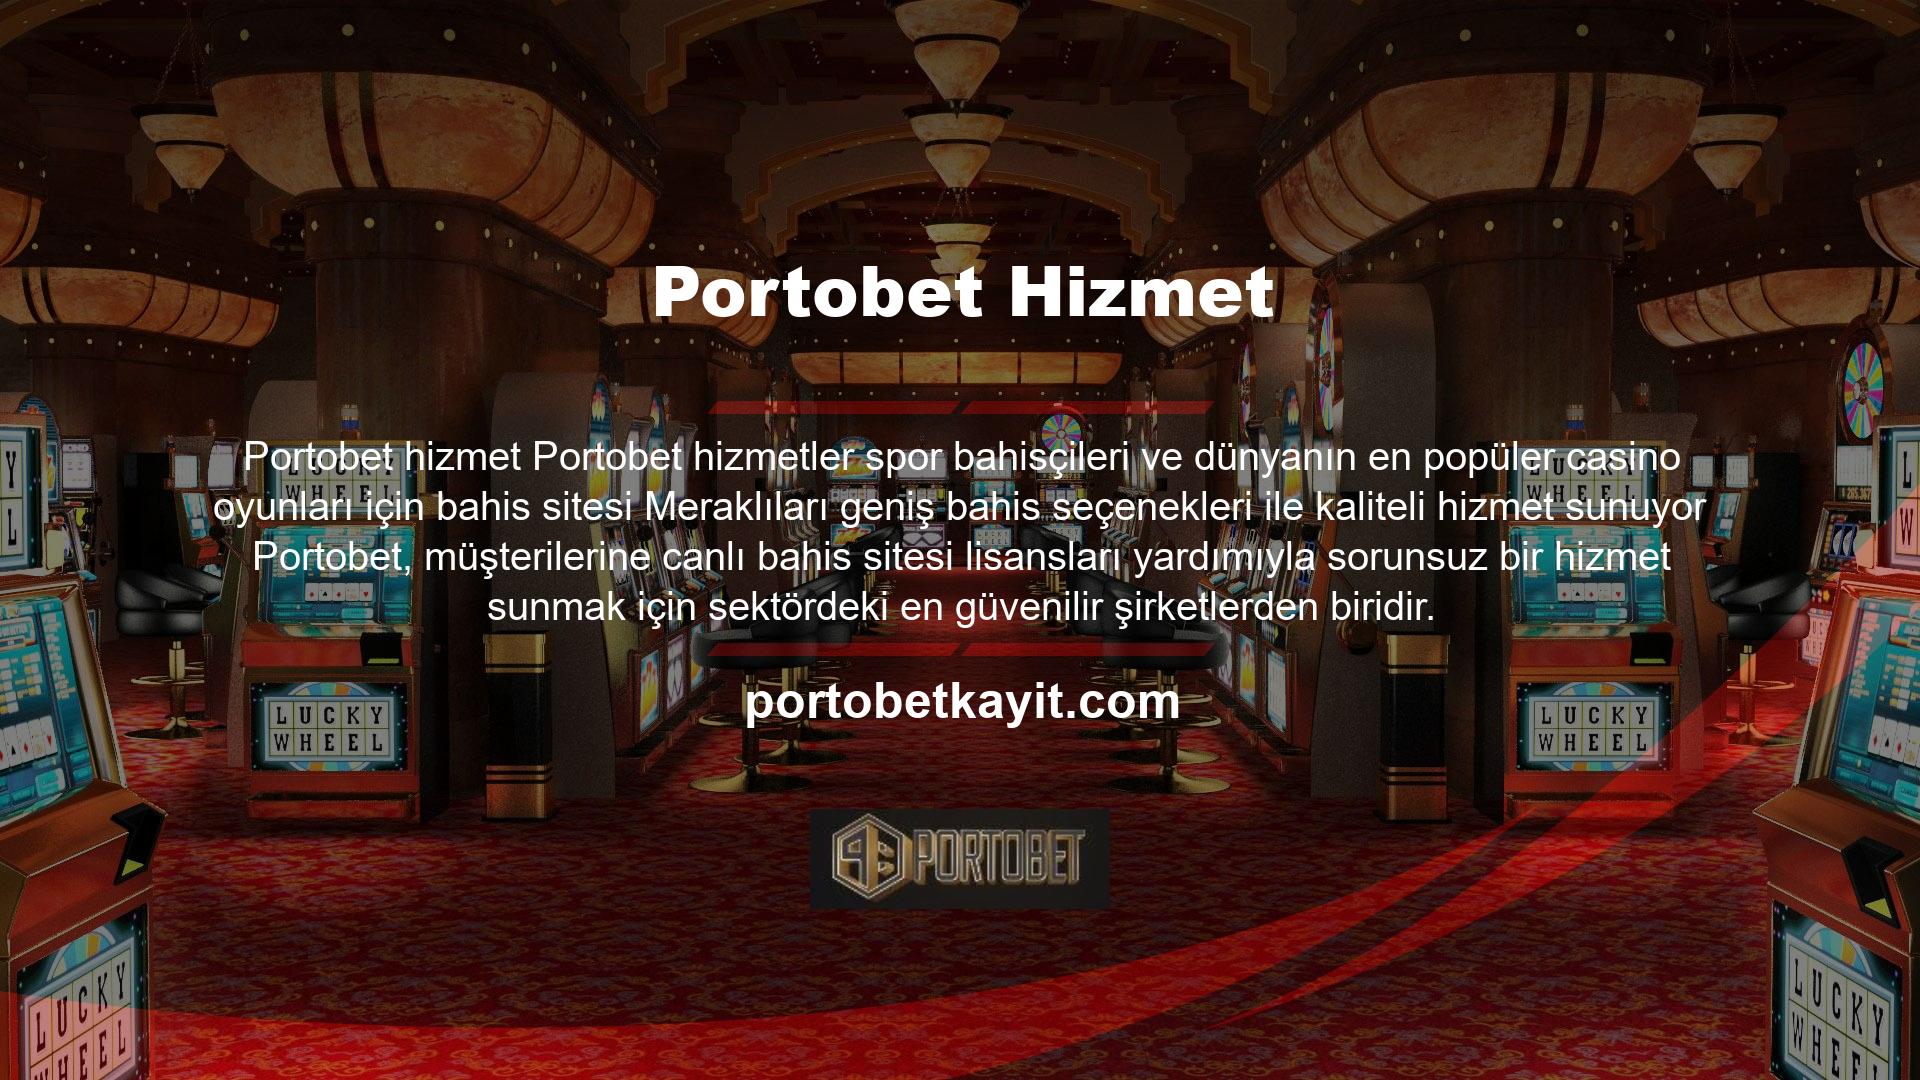 Bahis sitesi, ülkemizdeki tüm kayıtlı üyeleri için canlı spor bahisleri ve canlı casino oyunlarının Portobet giriş uluslararası sahnedeki etkilerinden başarıyla yararlanmıştır